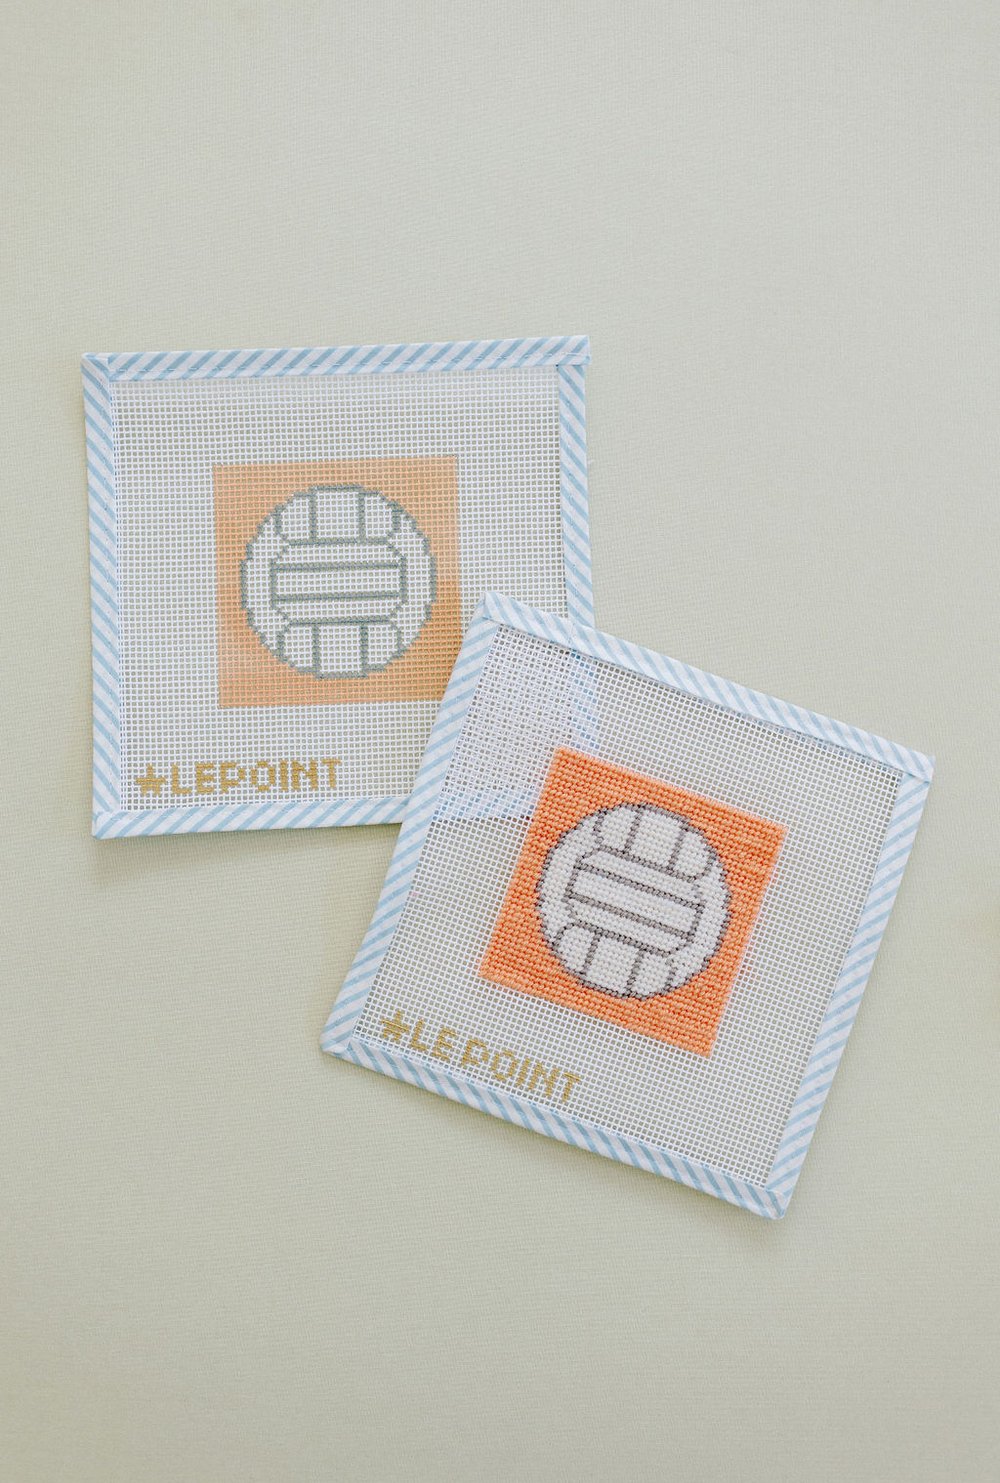 Little Le Point Kids Needlepoint Kit - Artist Palette — Le Point Studio